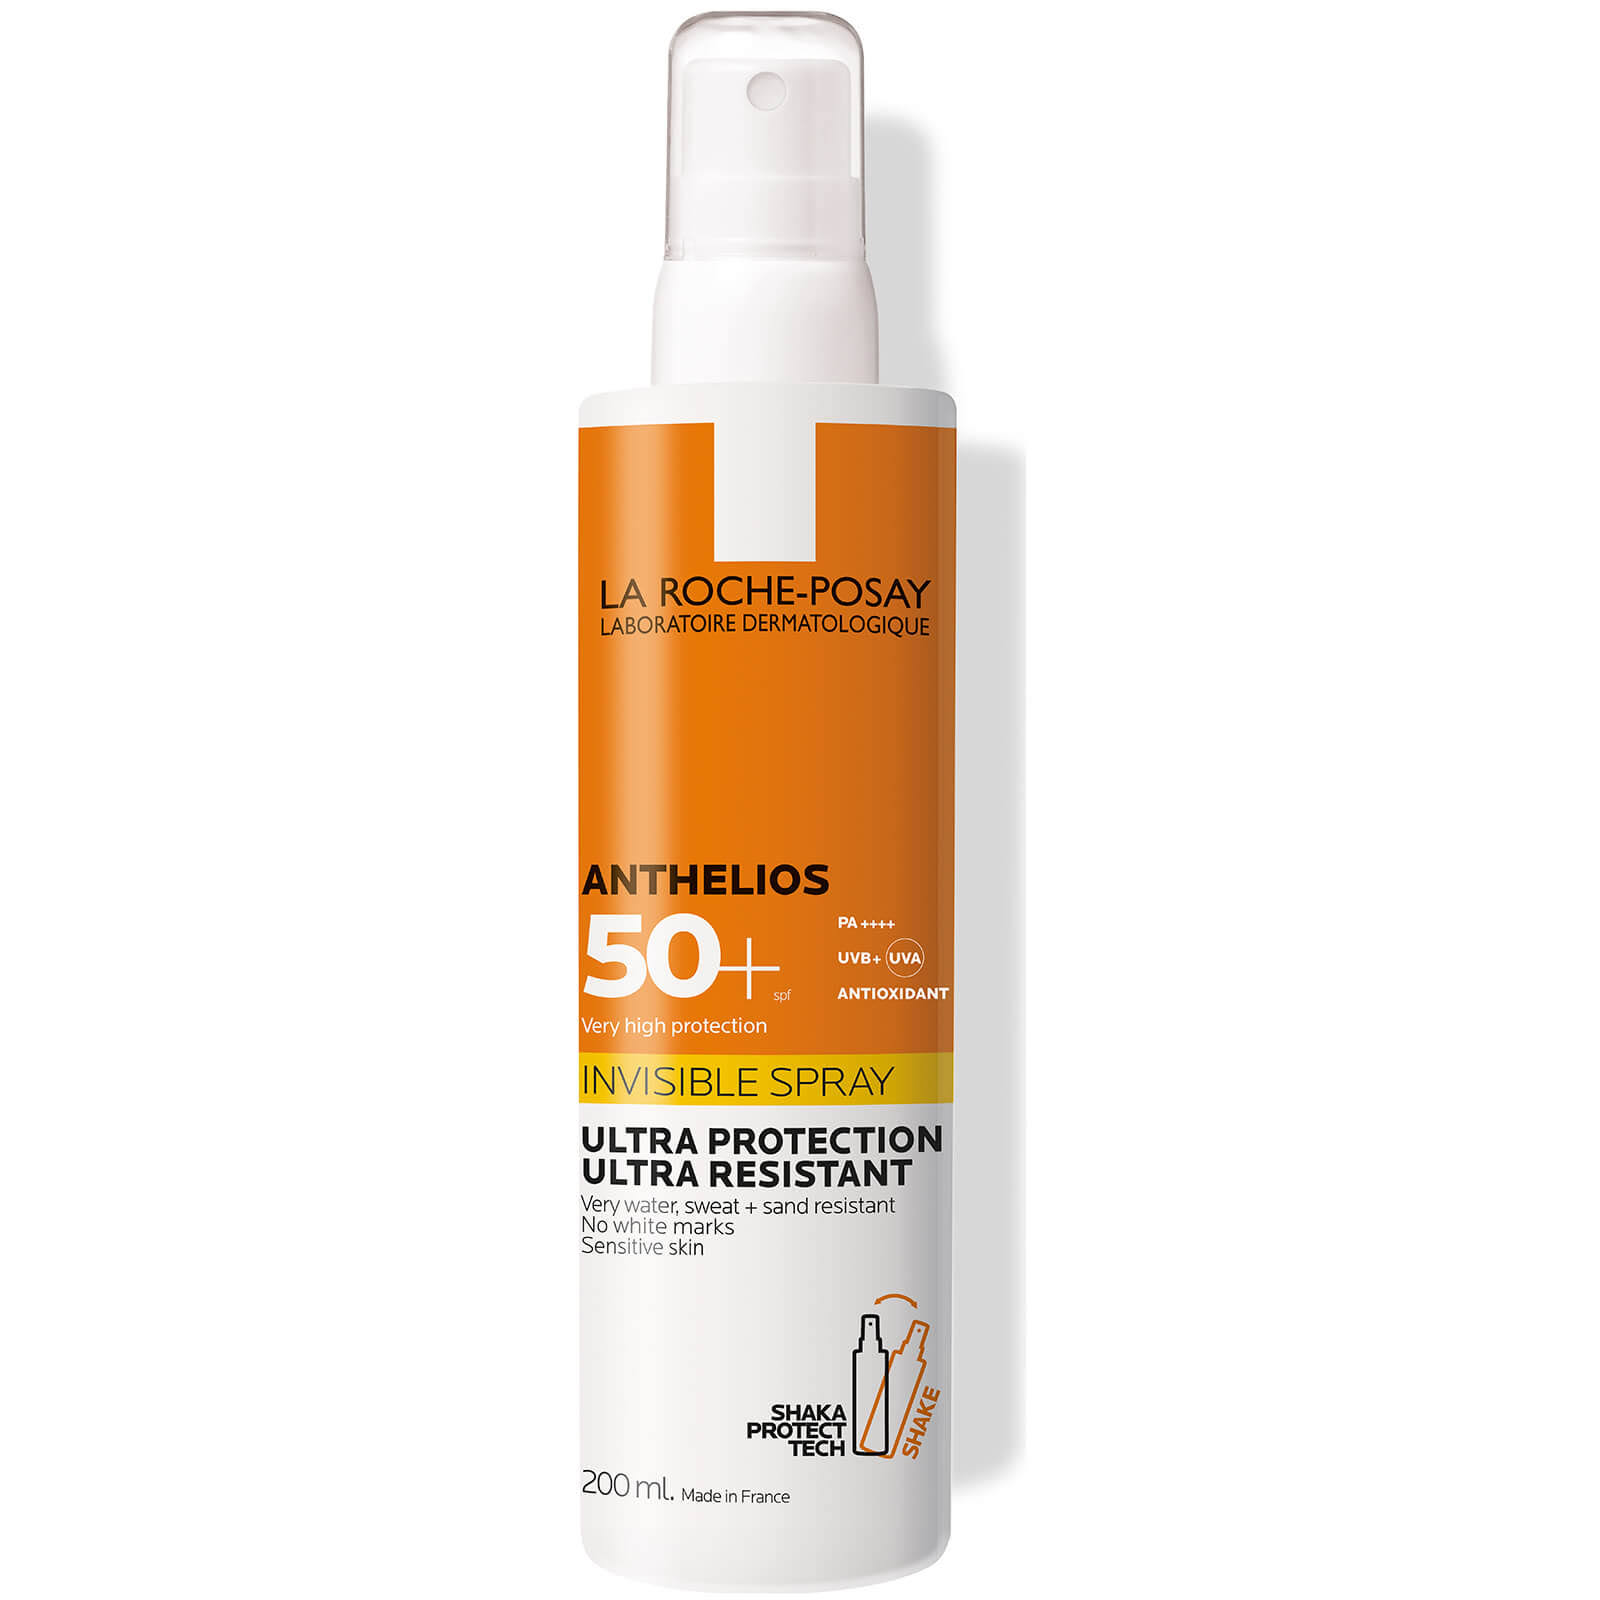 La Roche-Posay Anthelios Invisible Spray SPF50+ 200ml | Skin Care